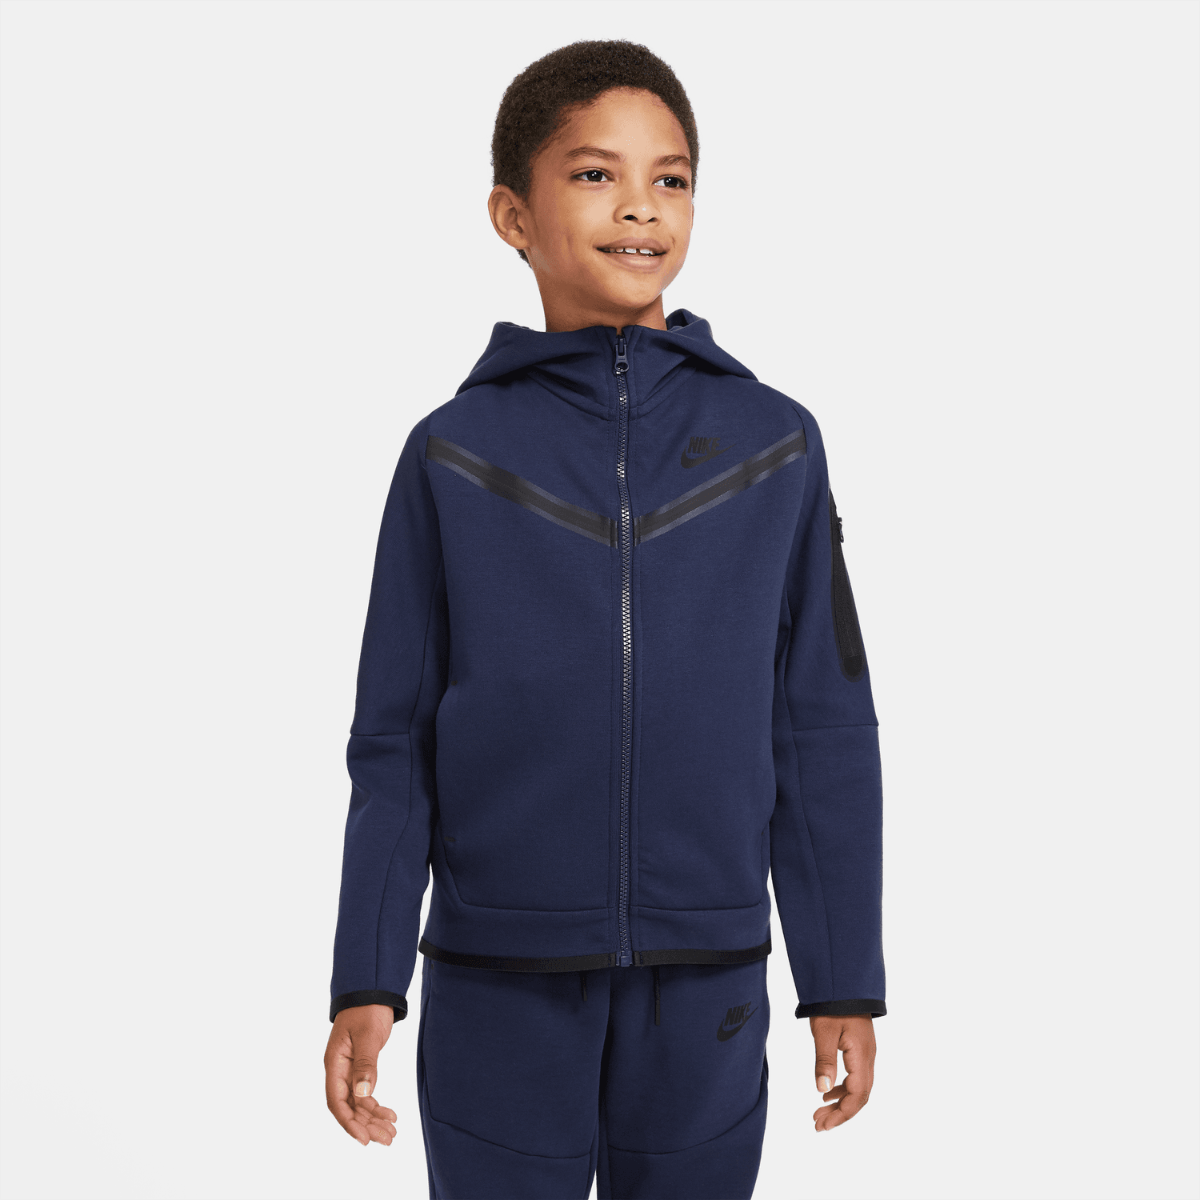 Veste Nike Tech Fleece Junior - Bleu/Noir